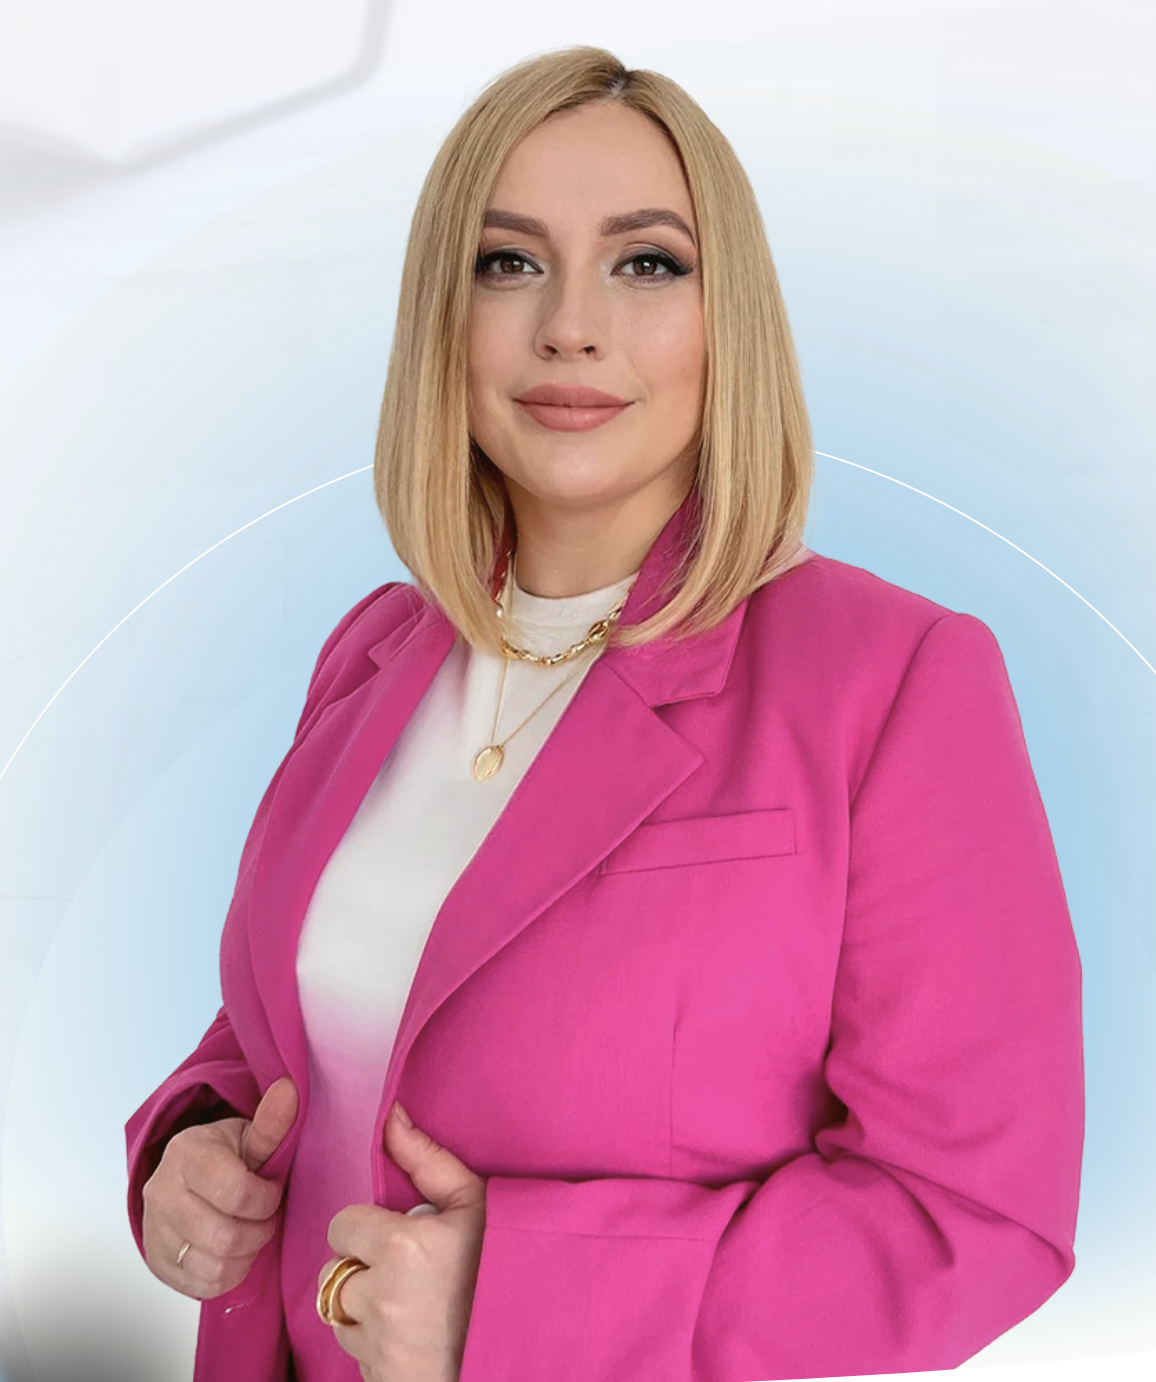 Меня зовут Екатерина Глебова. Я основала компанию "Эксперт Гранта", чтобы помочь предпринимателям легче получать финансирование от государства